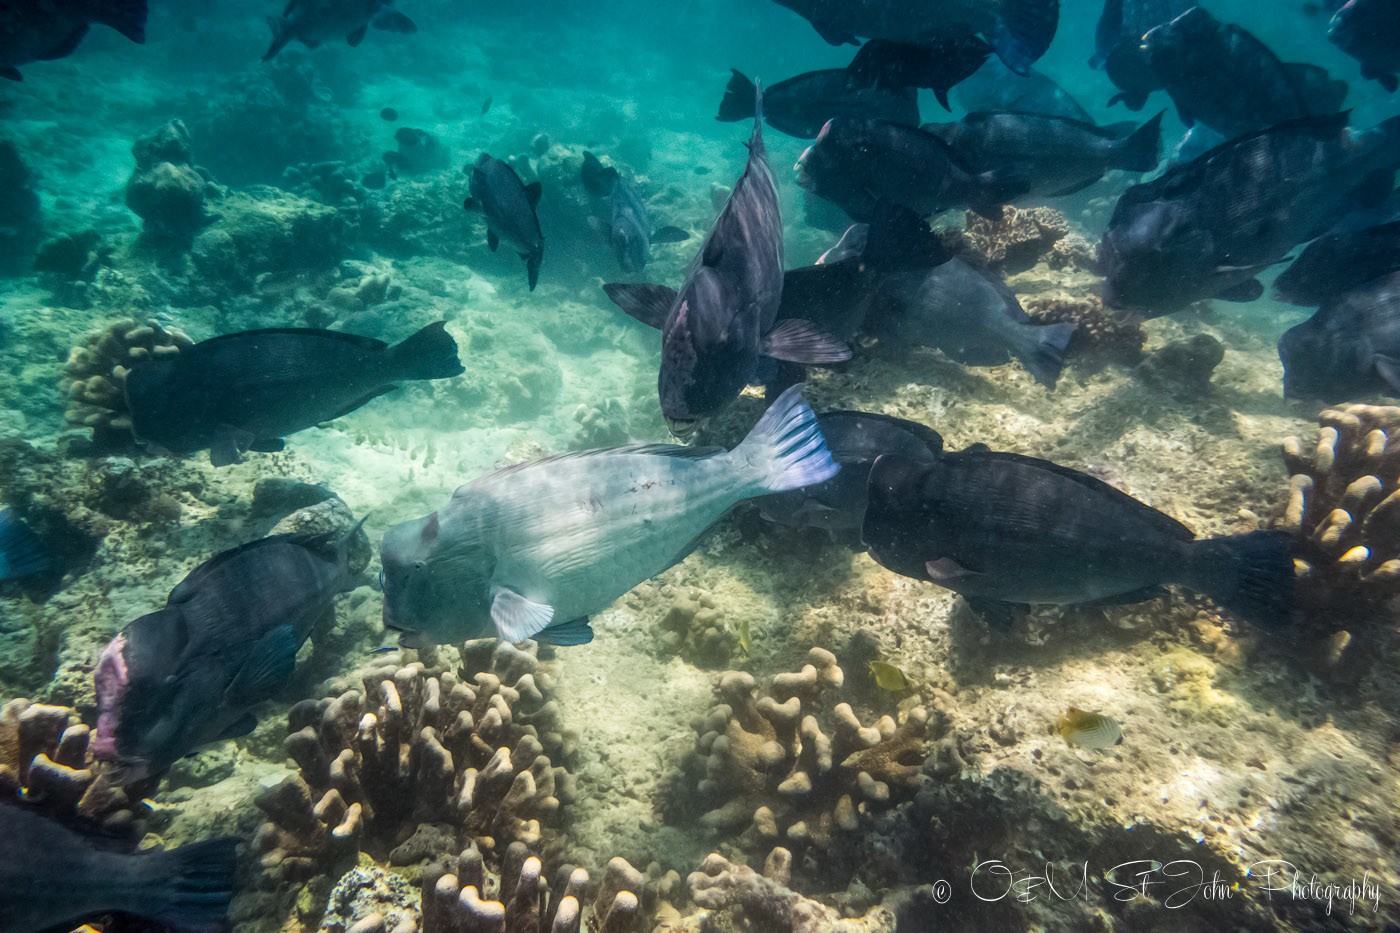 Green humphead parrotfish. Sipadan diving. Sabah. Malaysia